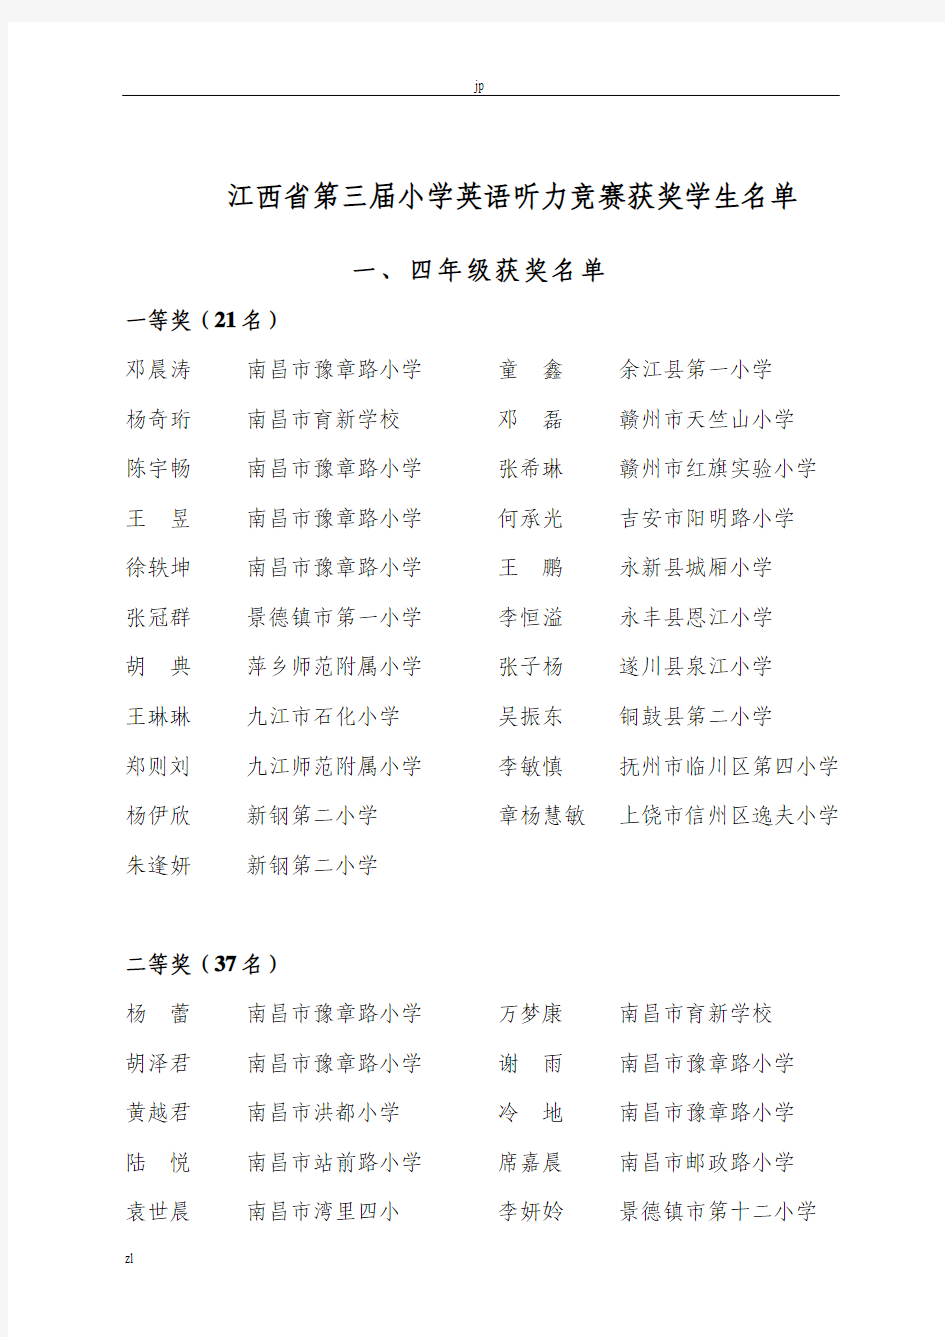 江西省第三届小学英语听力竞赛获奖学生名单